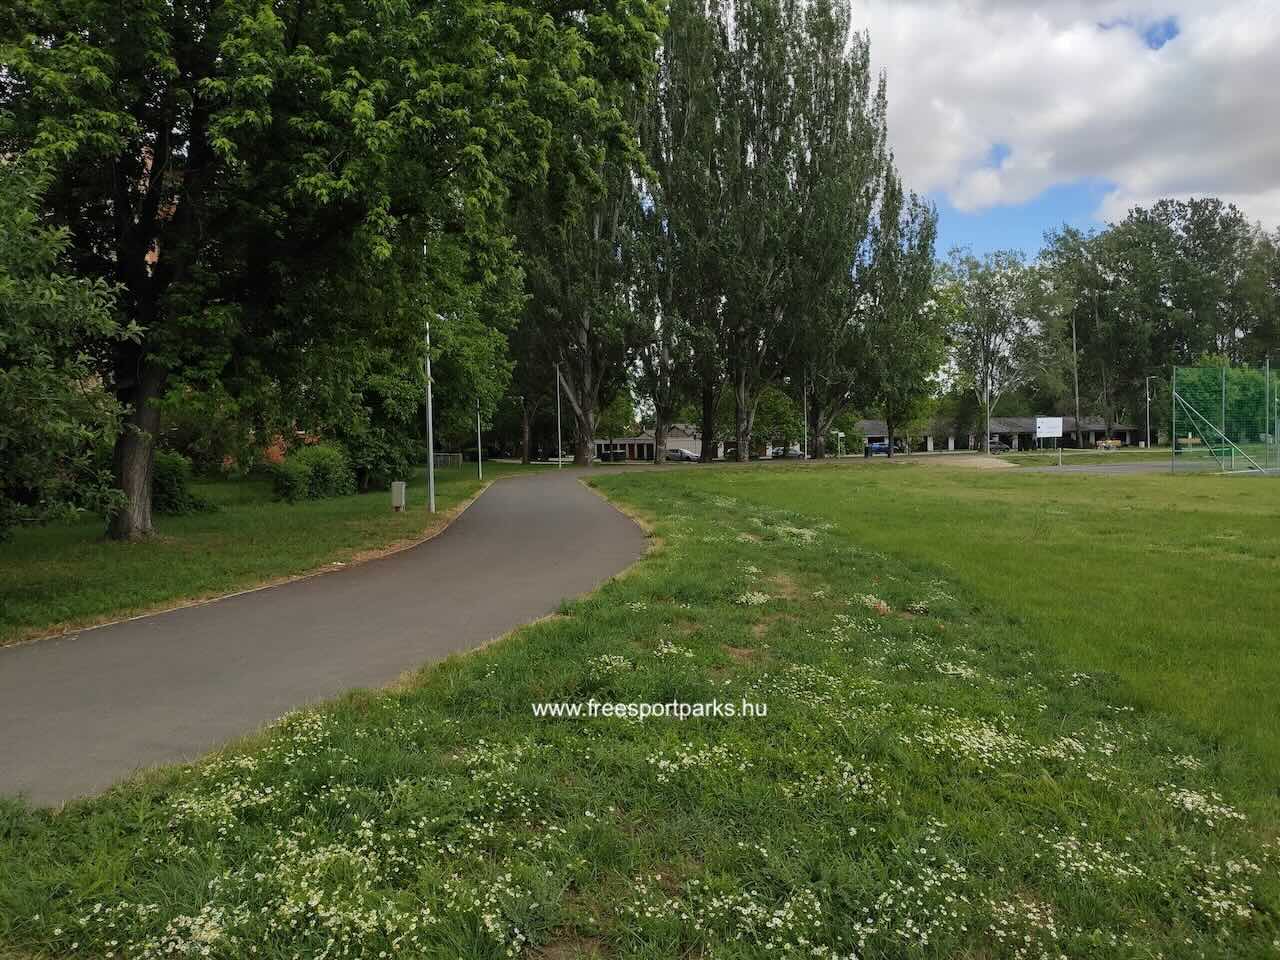 aszfaltozott sétány a rétnél, Sárvár Szabadidőpark - Free Sport Parks Blog